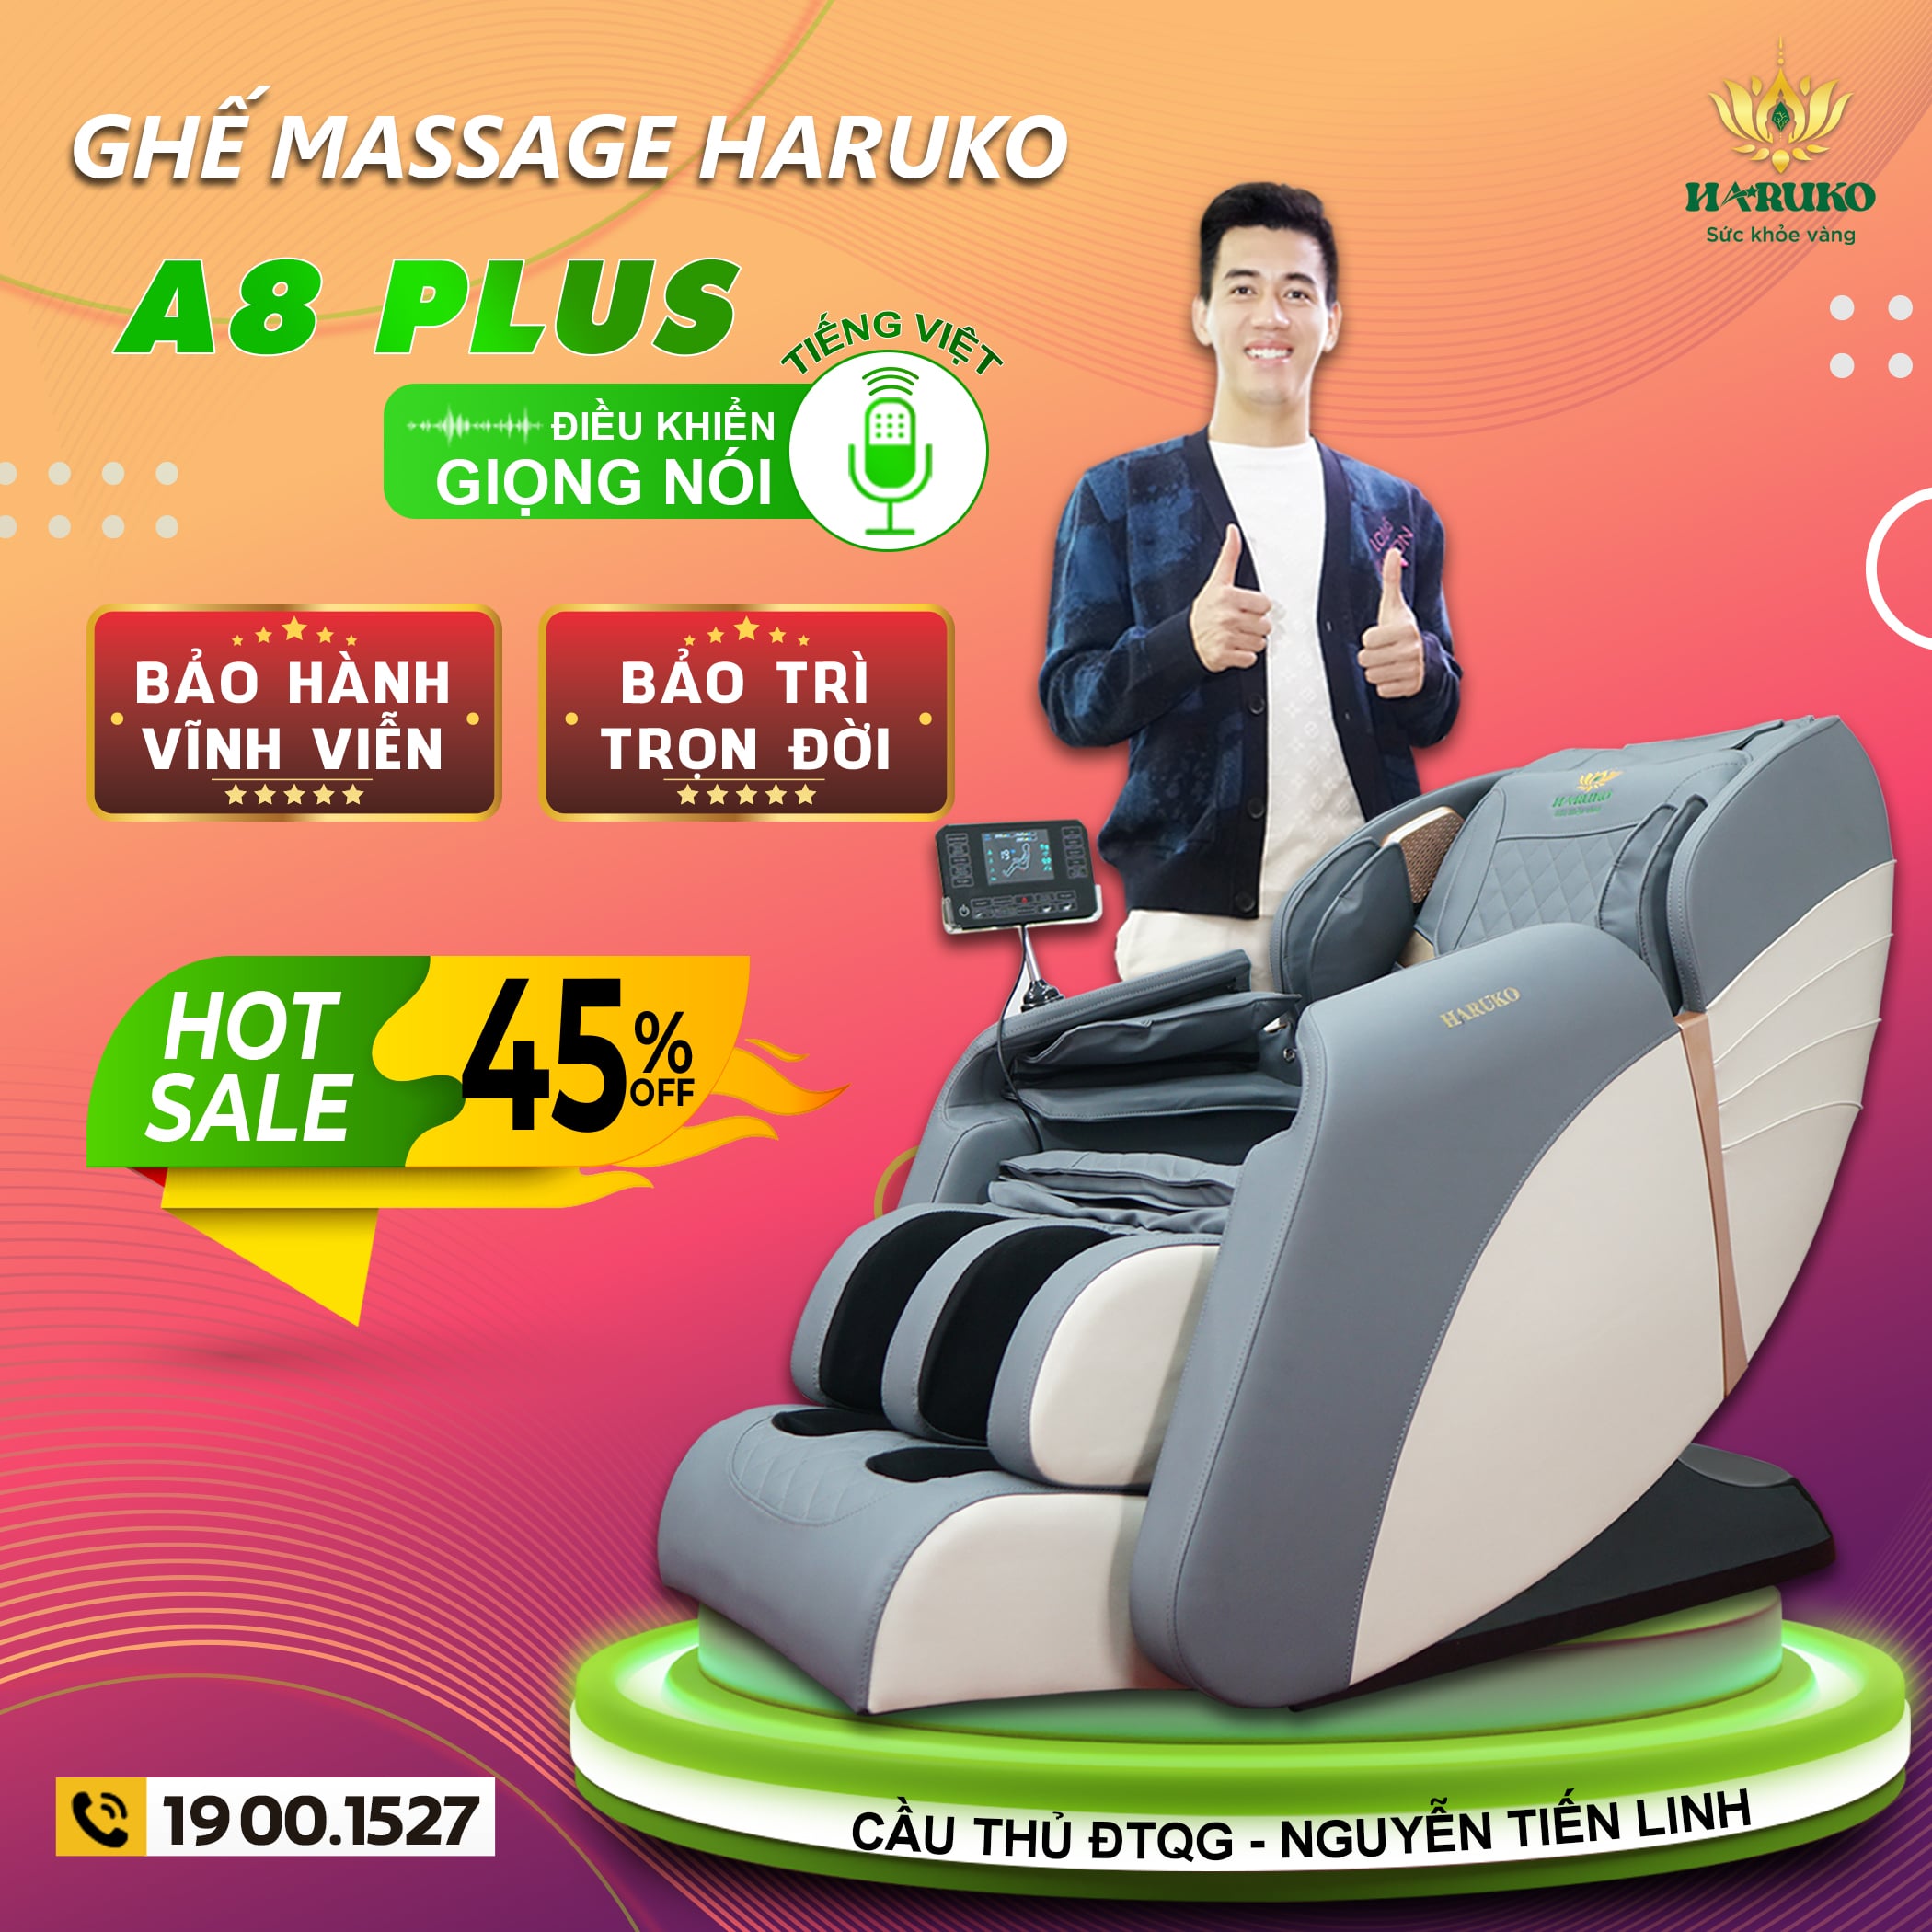 Haruko-A8 sở hữu công nghệ massage Nhật Bản có phần nổi trội so với mẫu sản phẩm tới từ Đức